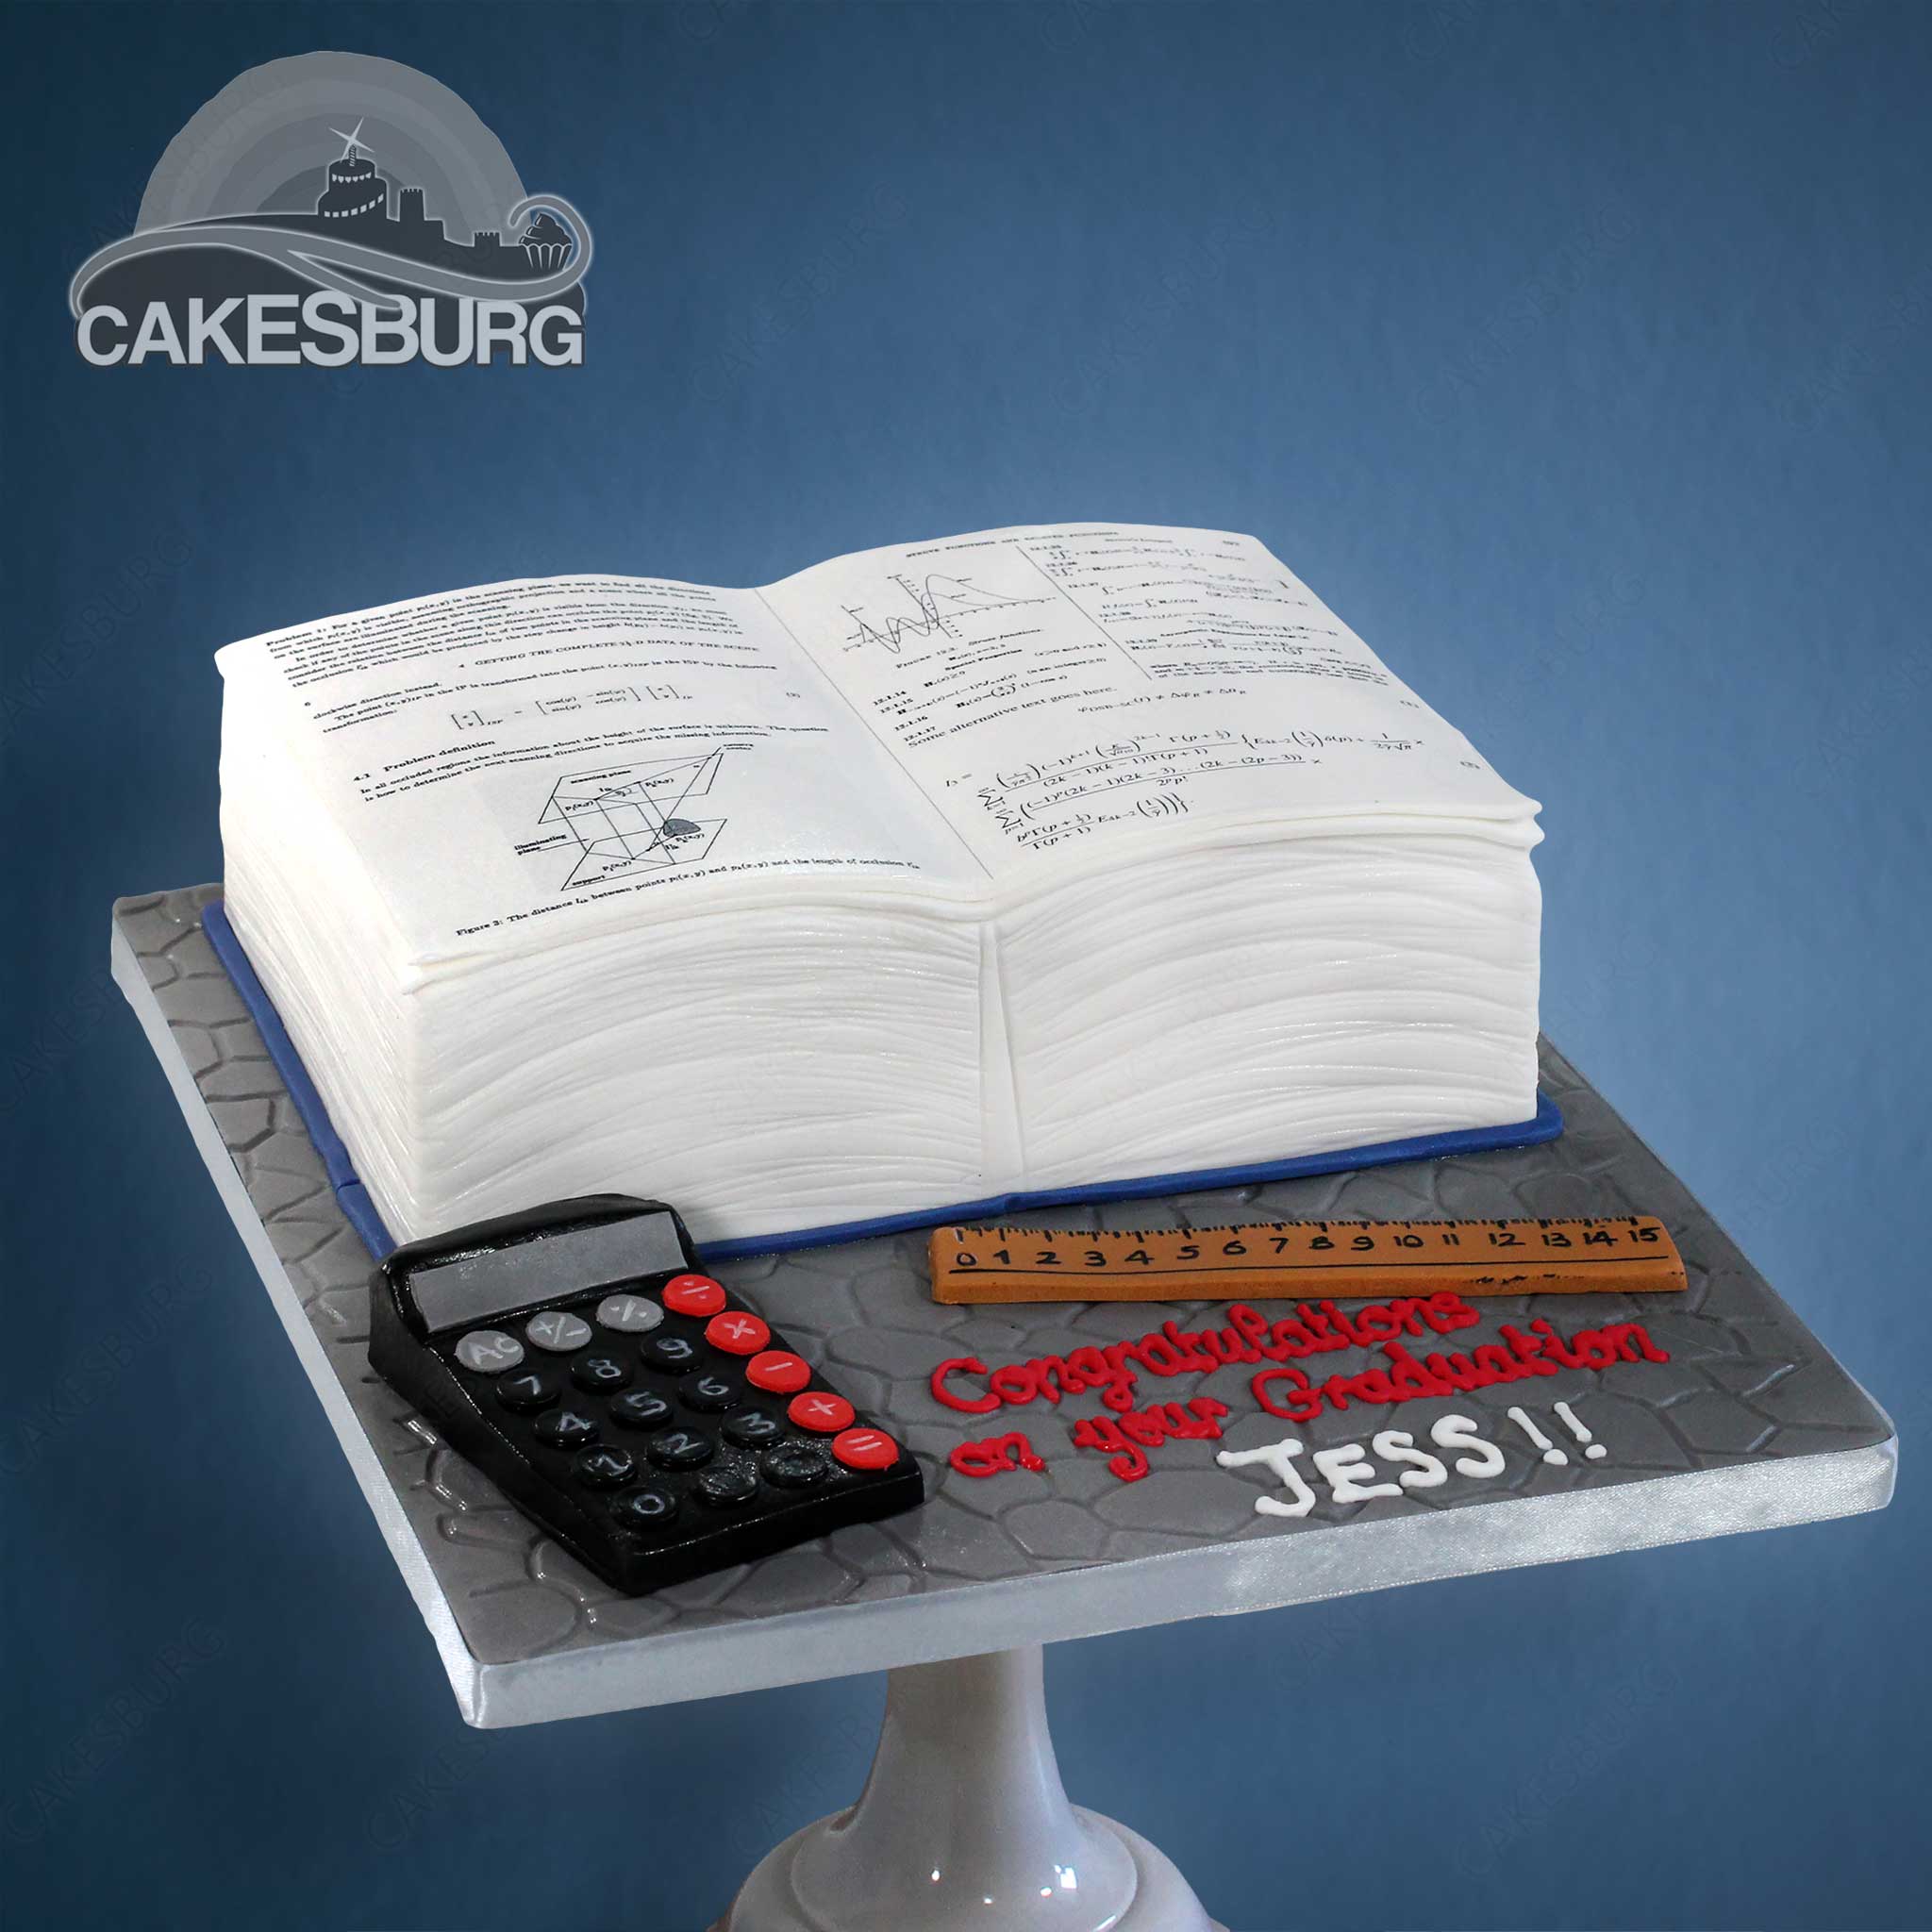 Book cake | Book cake, Book cakes, Teacher cakes